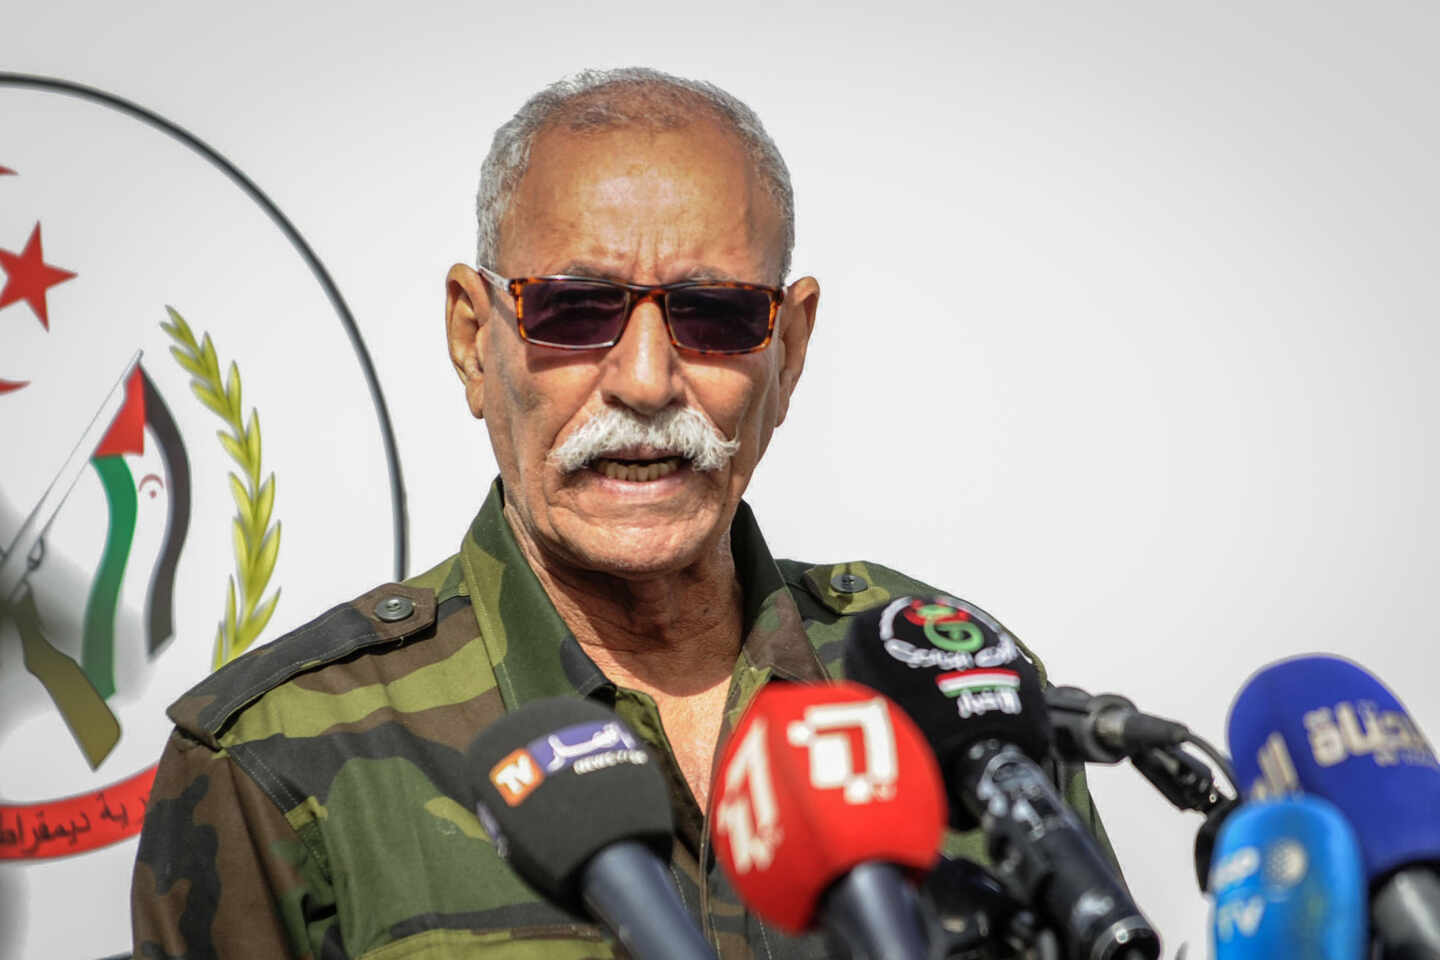 El líder del Frente Polisario y presidente de la República Árabe Saharaui Democrática (Rasd), Brahim Gali, en una imagen de archivo.